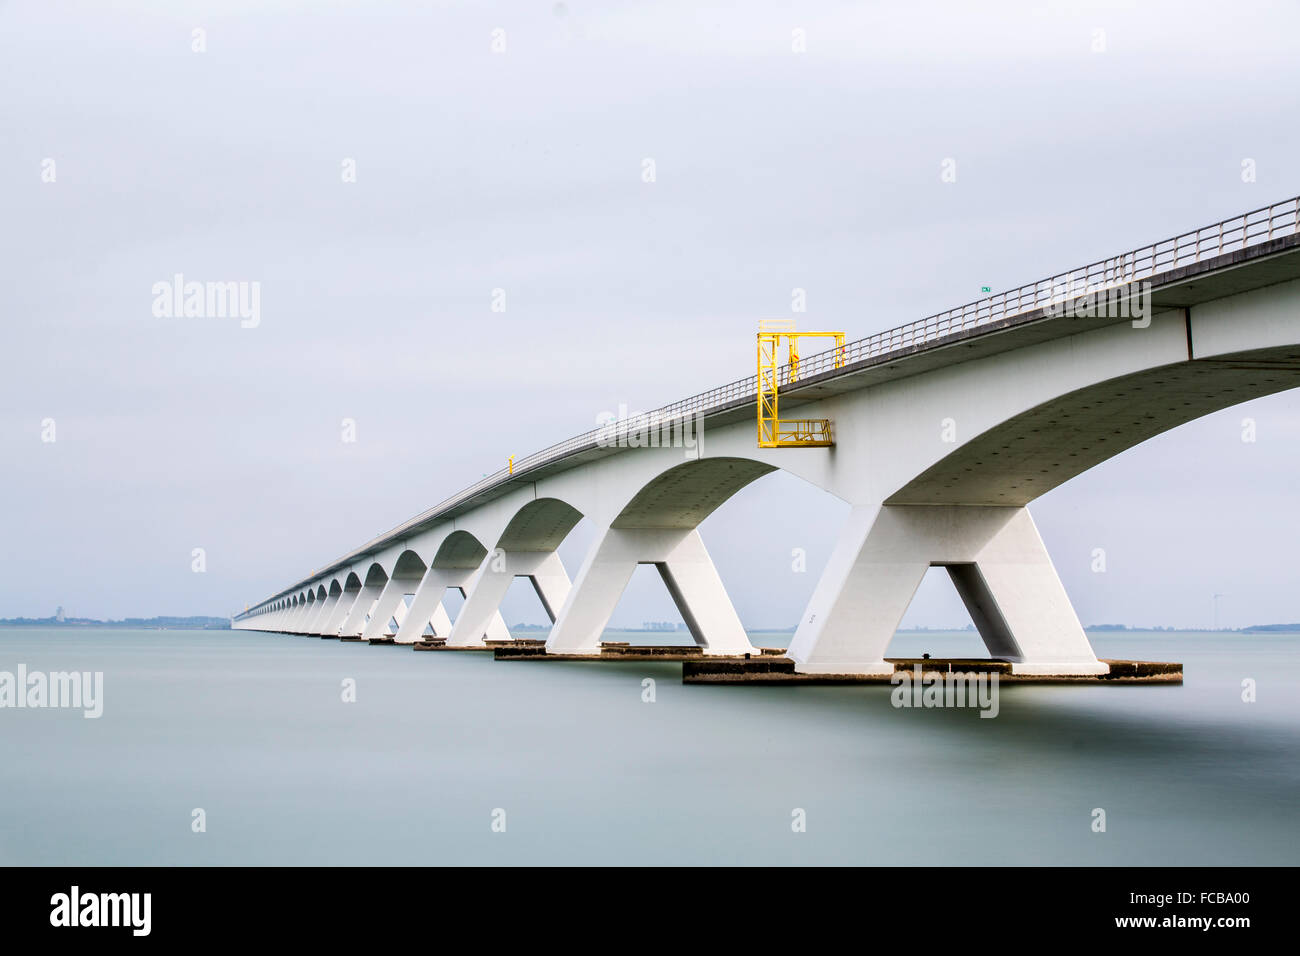 Netherlands, Zierikzee, The Zeeland Bridge. Oosterschelde estuary. Schouwen-Duiveland and Noord-Beveland. Long exposure Stock Photo